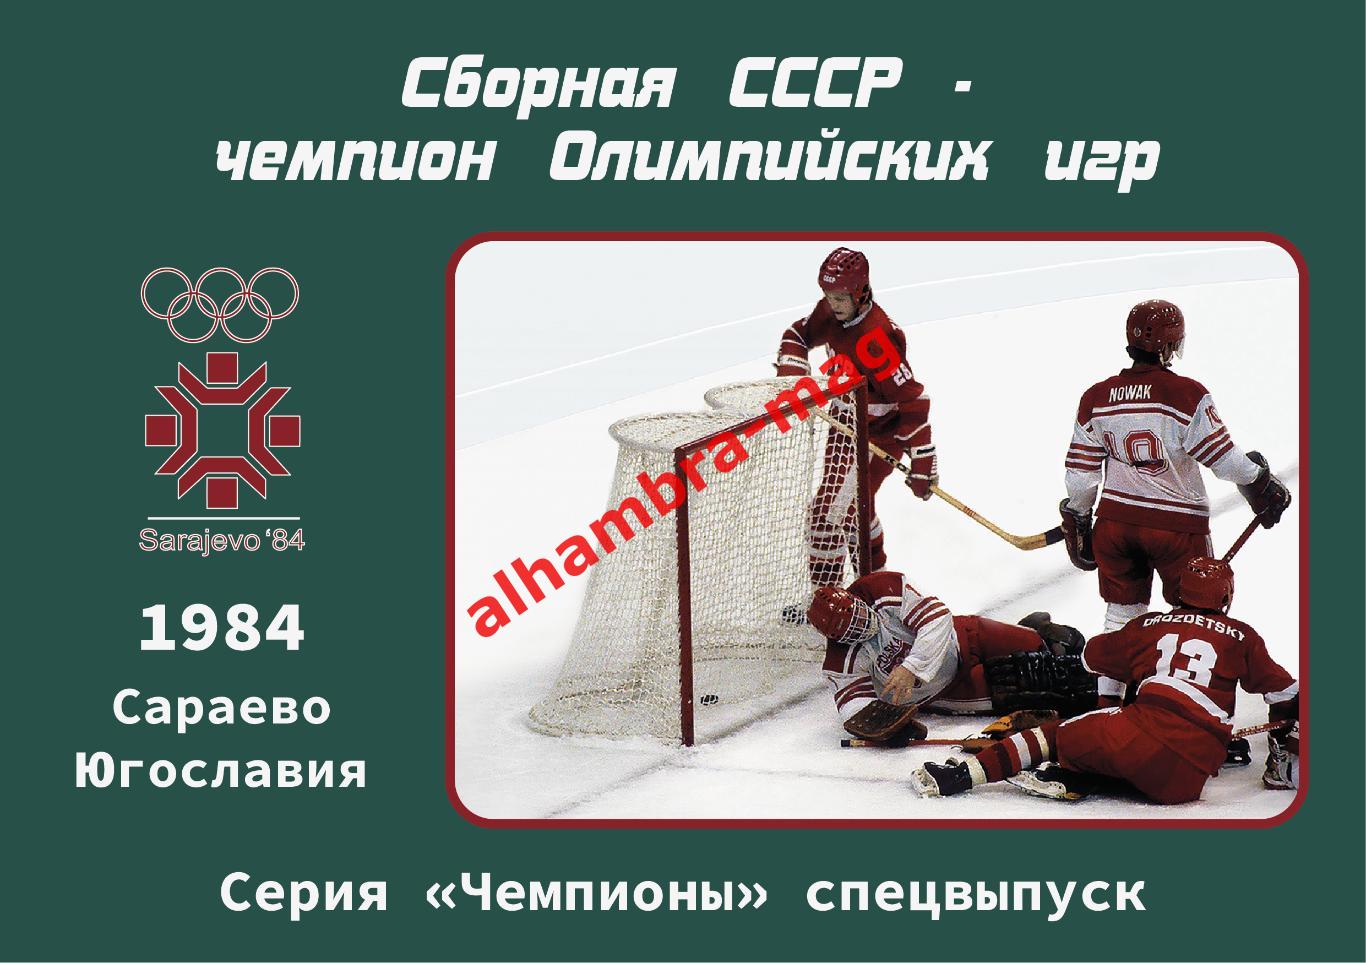 Сборная СССР - Чемпион Олимпийских игр 1984 год